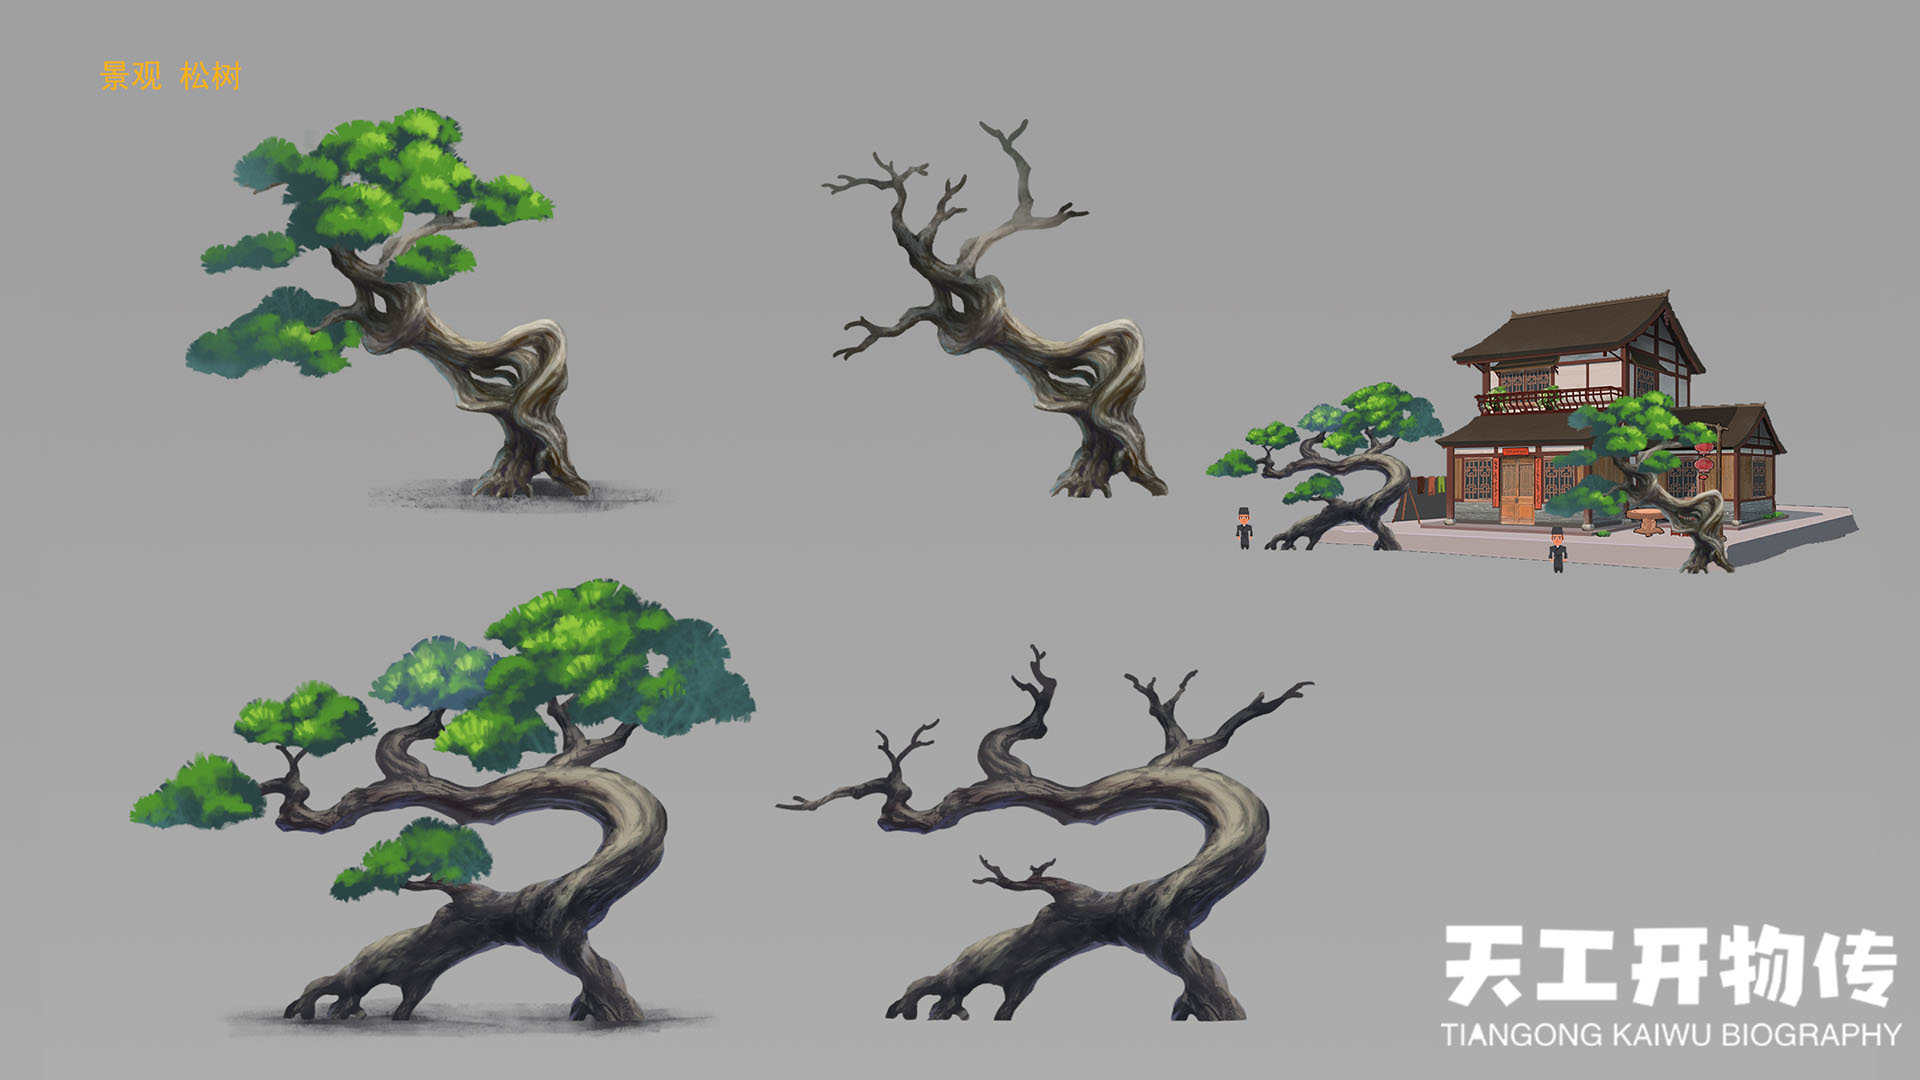 原画大大设计的松树#游戏推荐#游戏安利#游戏资讯#吃瓜爆料